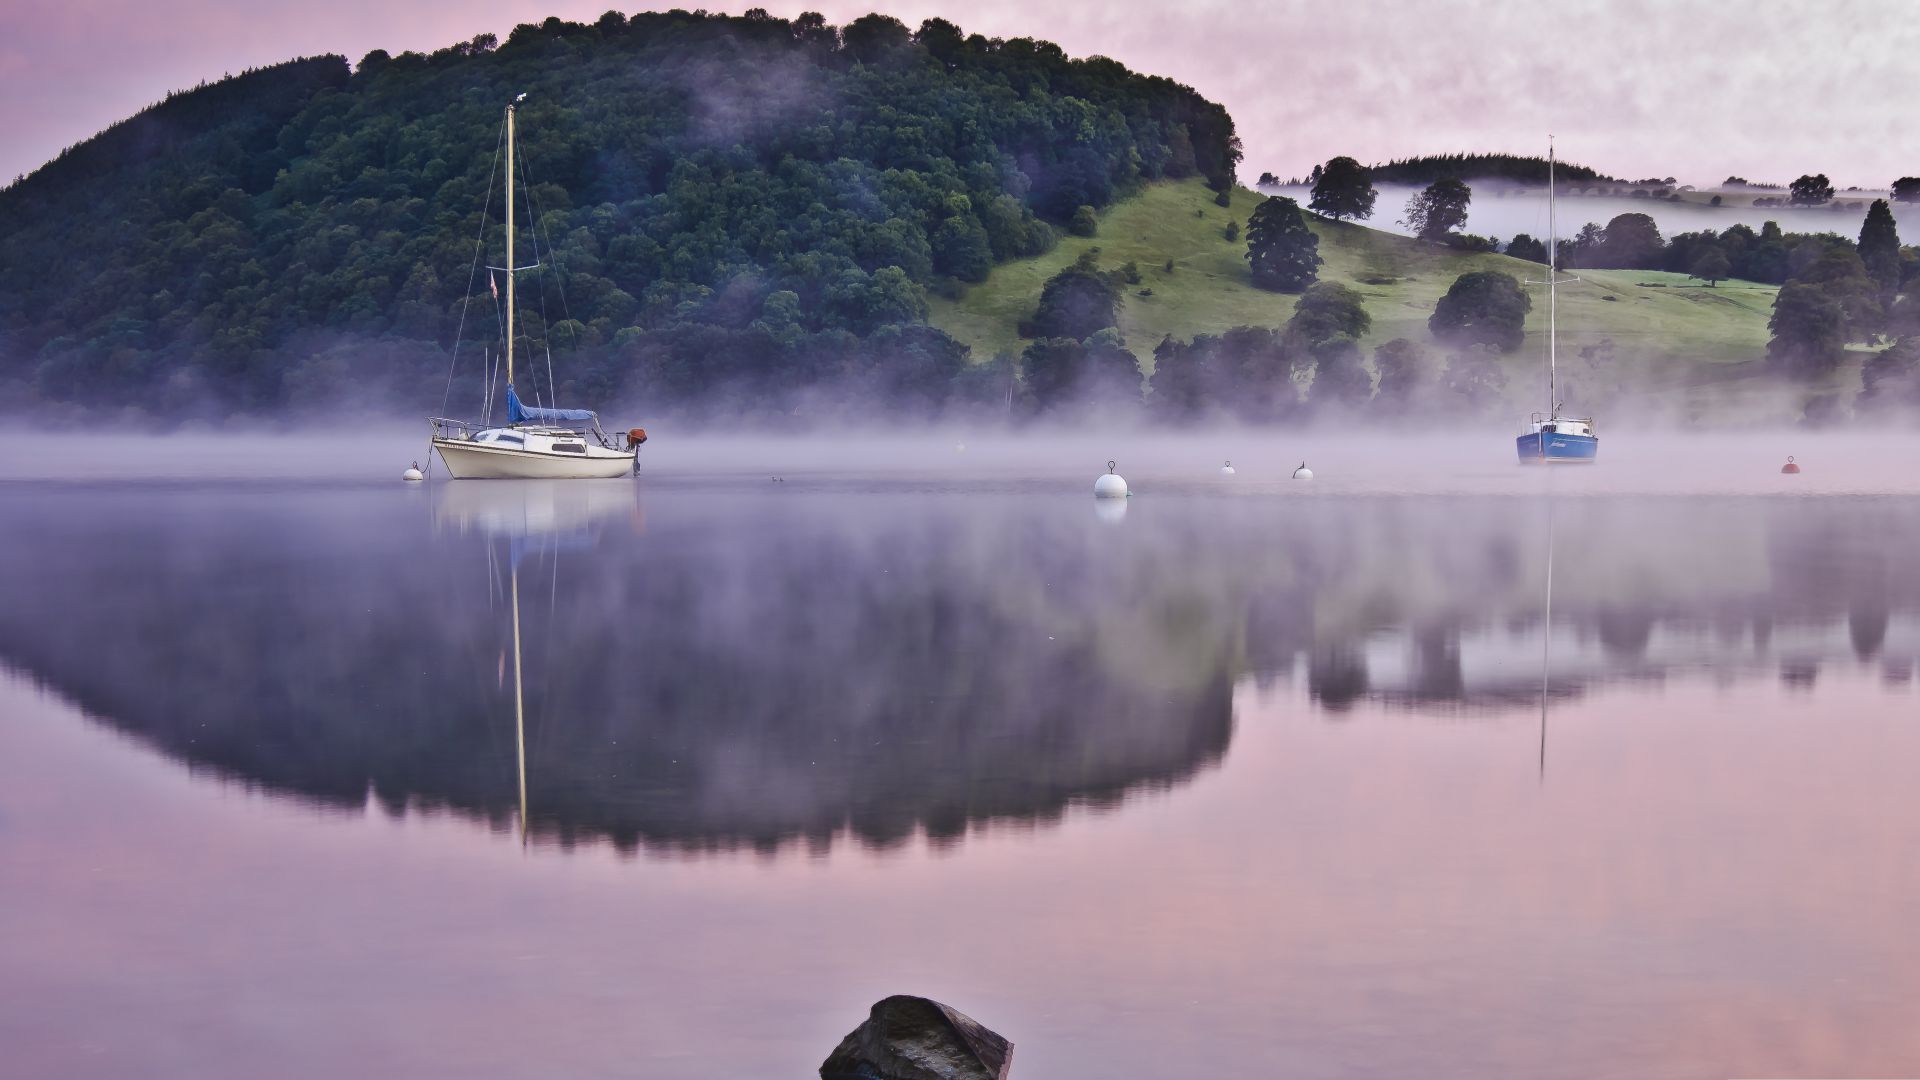 Озеро, 4k, 5k, туман, холмы, лодка, отражение, Lake, 4k, 5k wallpaper, fog, hills, boat, reflection (horizontal)